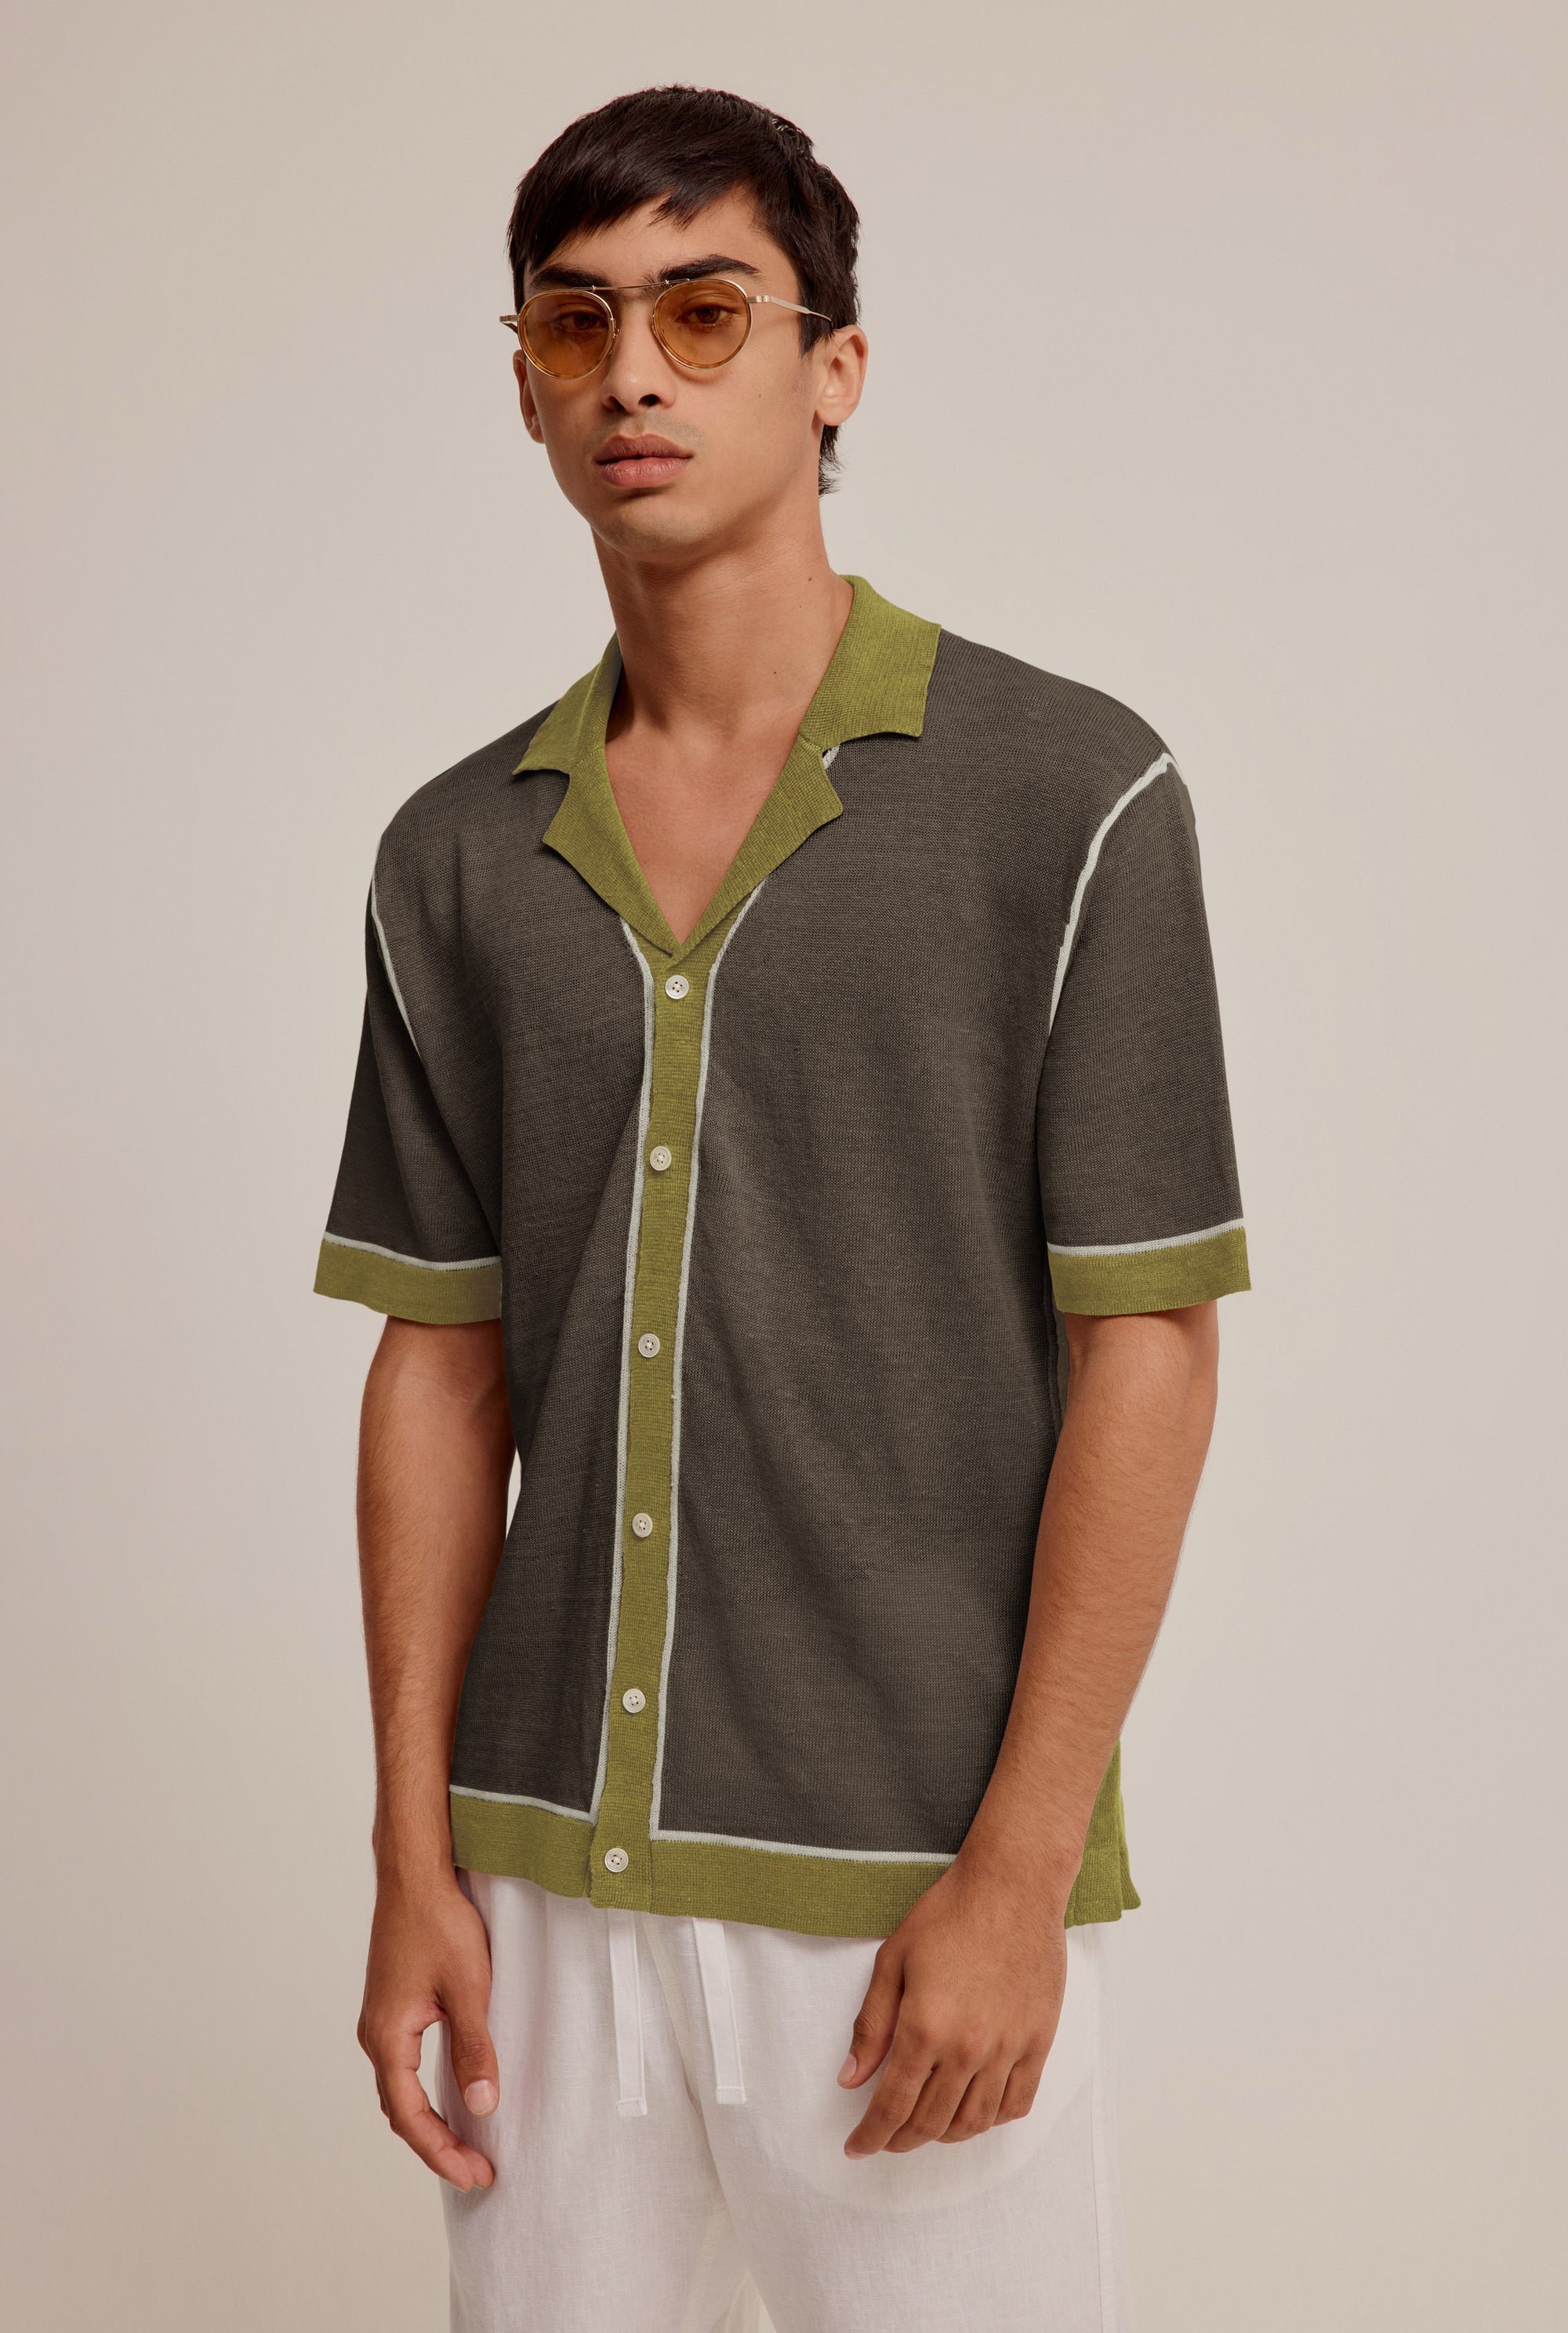 Knitted Contrast Short Sleeve Shirt - Brown/Moss Green/Cream